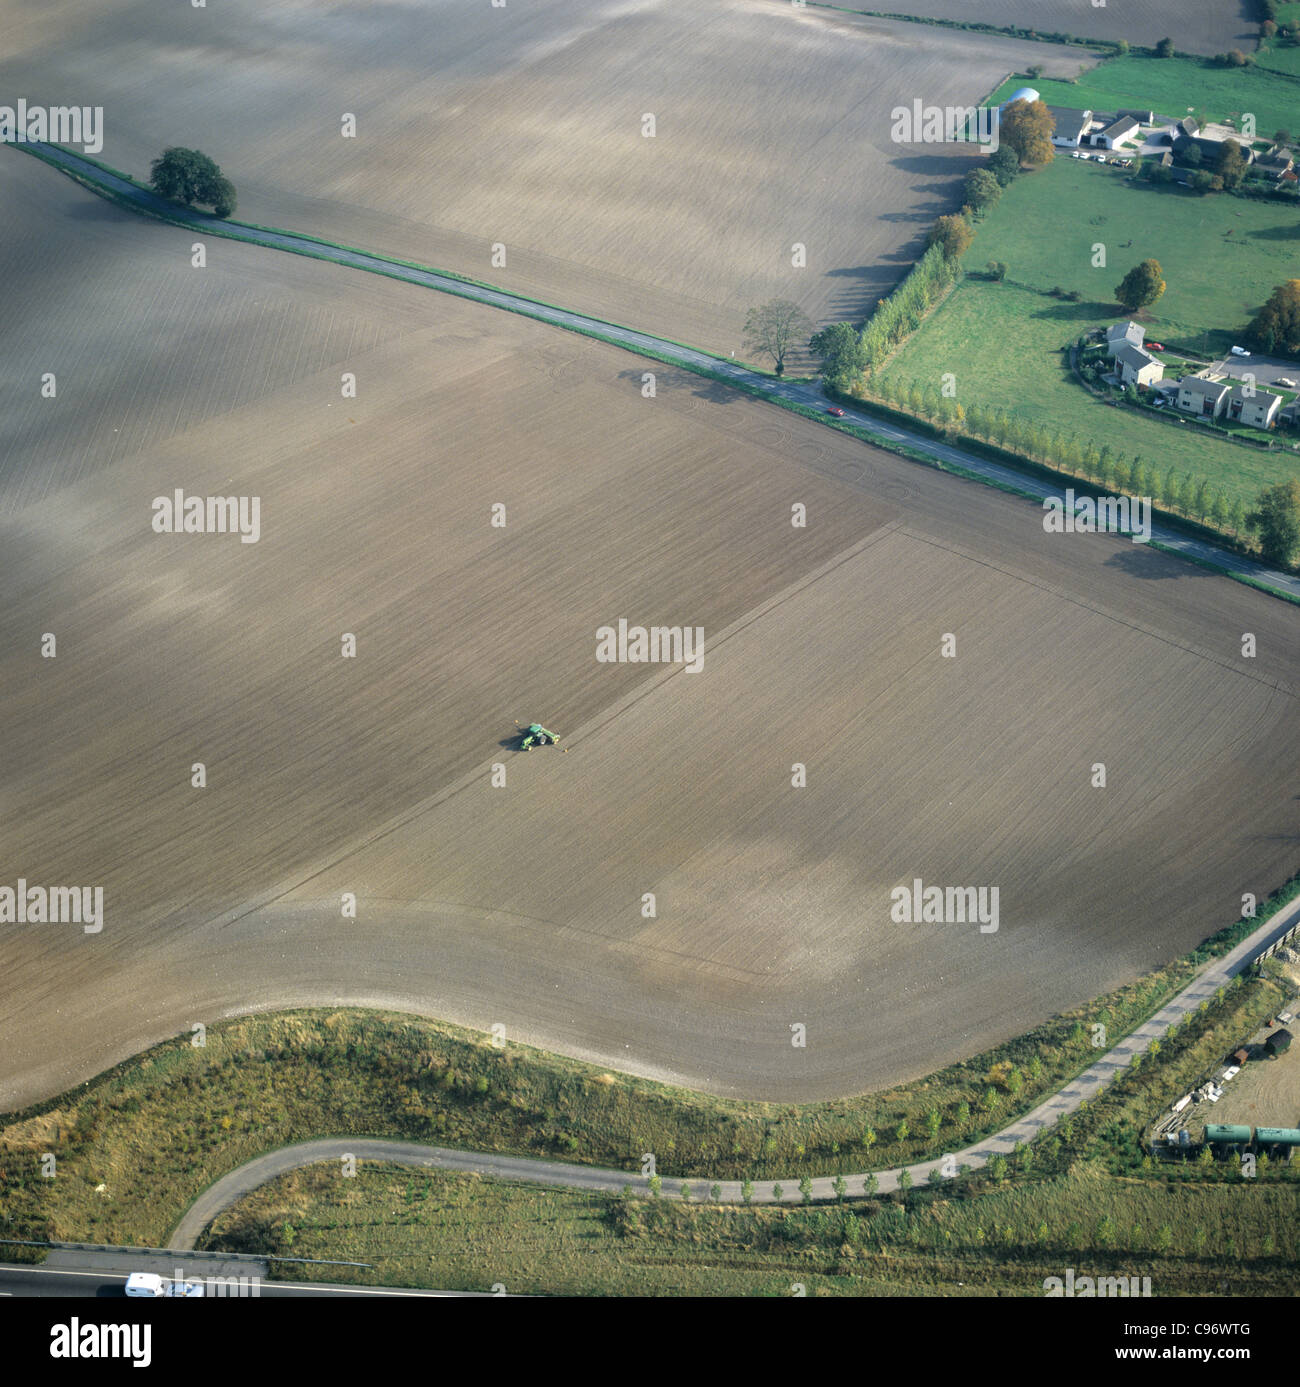 Fotografía aérea de otoño de tierras en barbecho y la siembra de semillero, Oxfordshire, Octubre Foto de stock